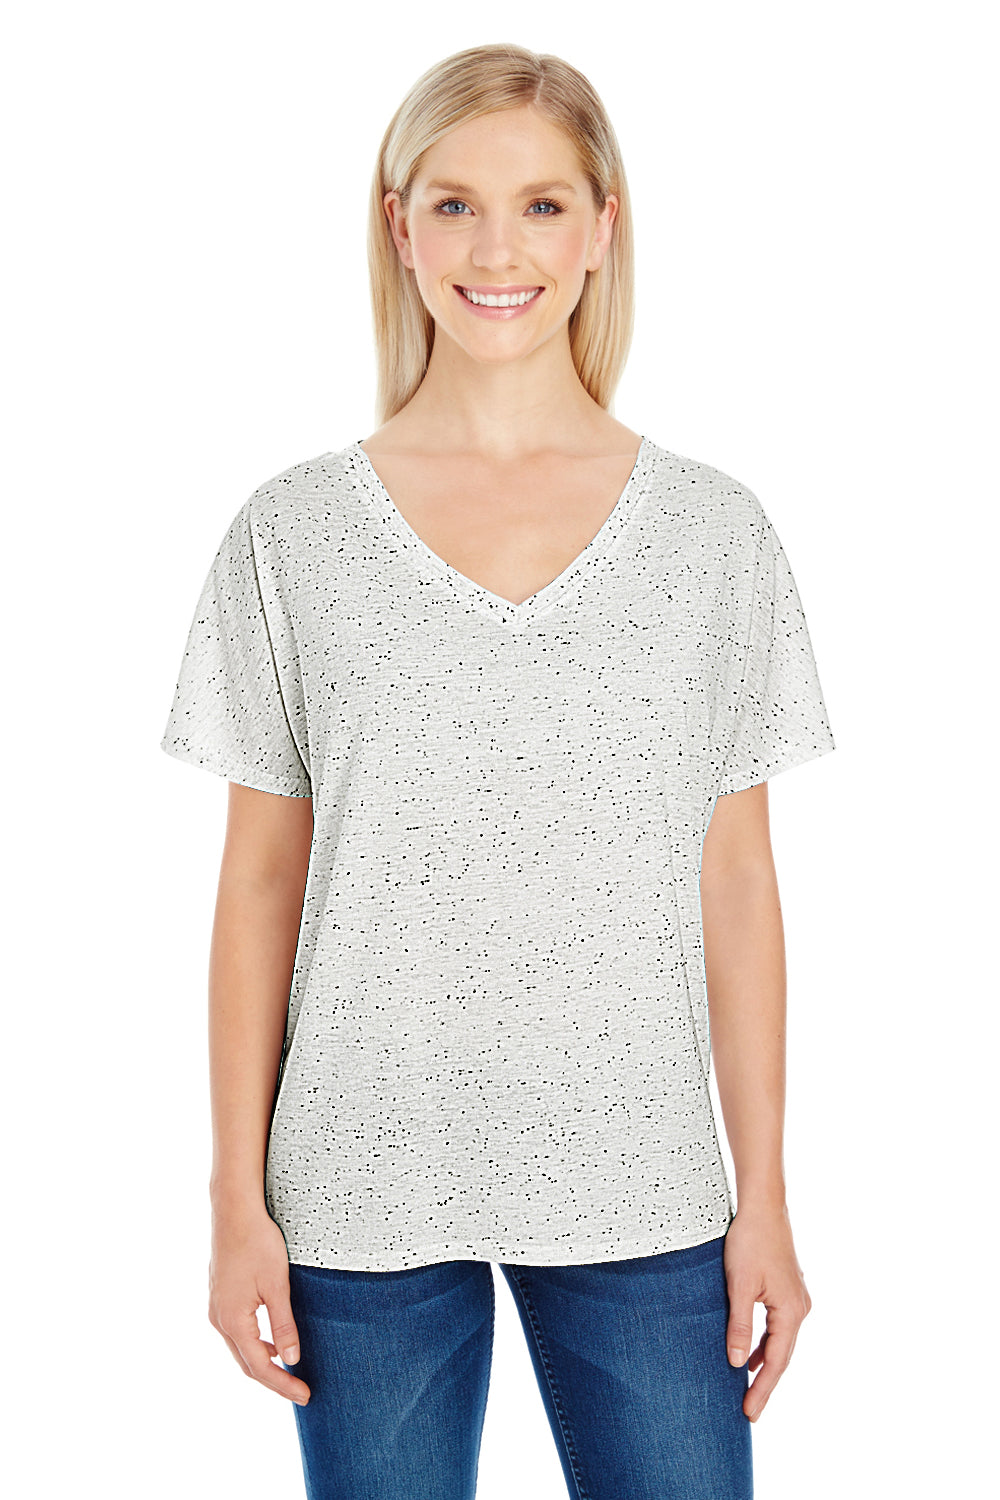 Threadfast Apparel 203FV Womens Fleck Short Sleeve V-Neck T-Shirt Cream Front